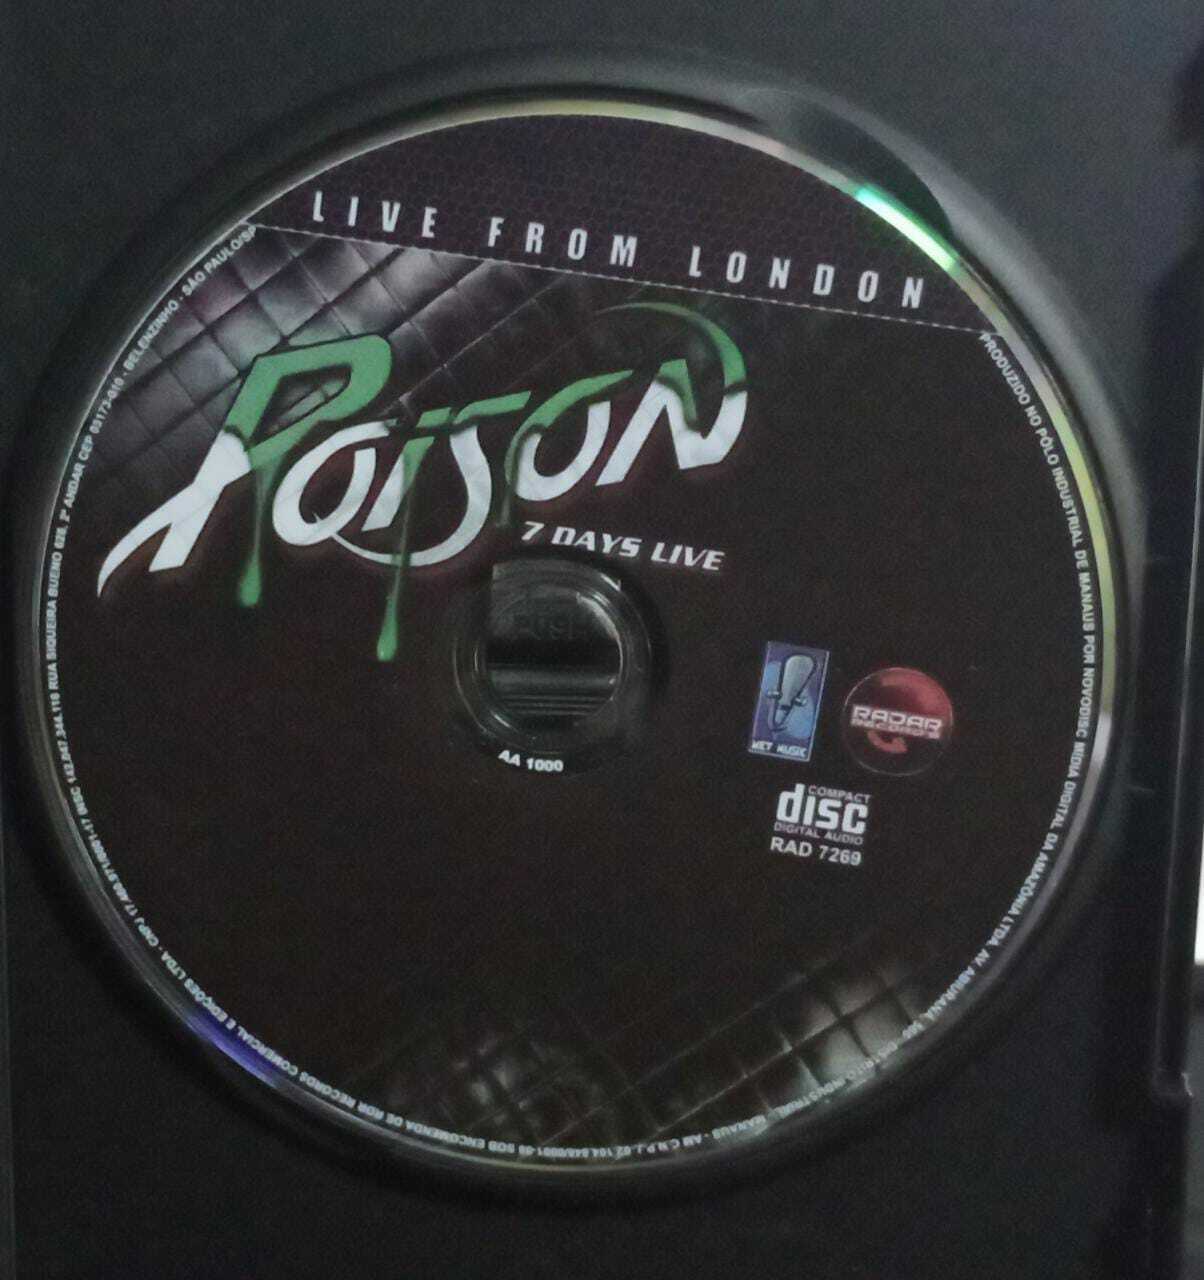 DVD - Poison - 7 Days Live